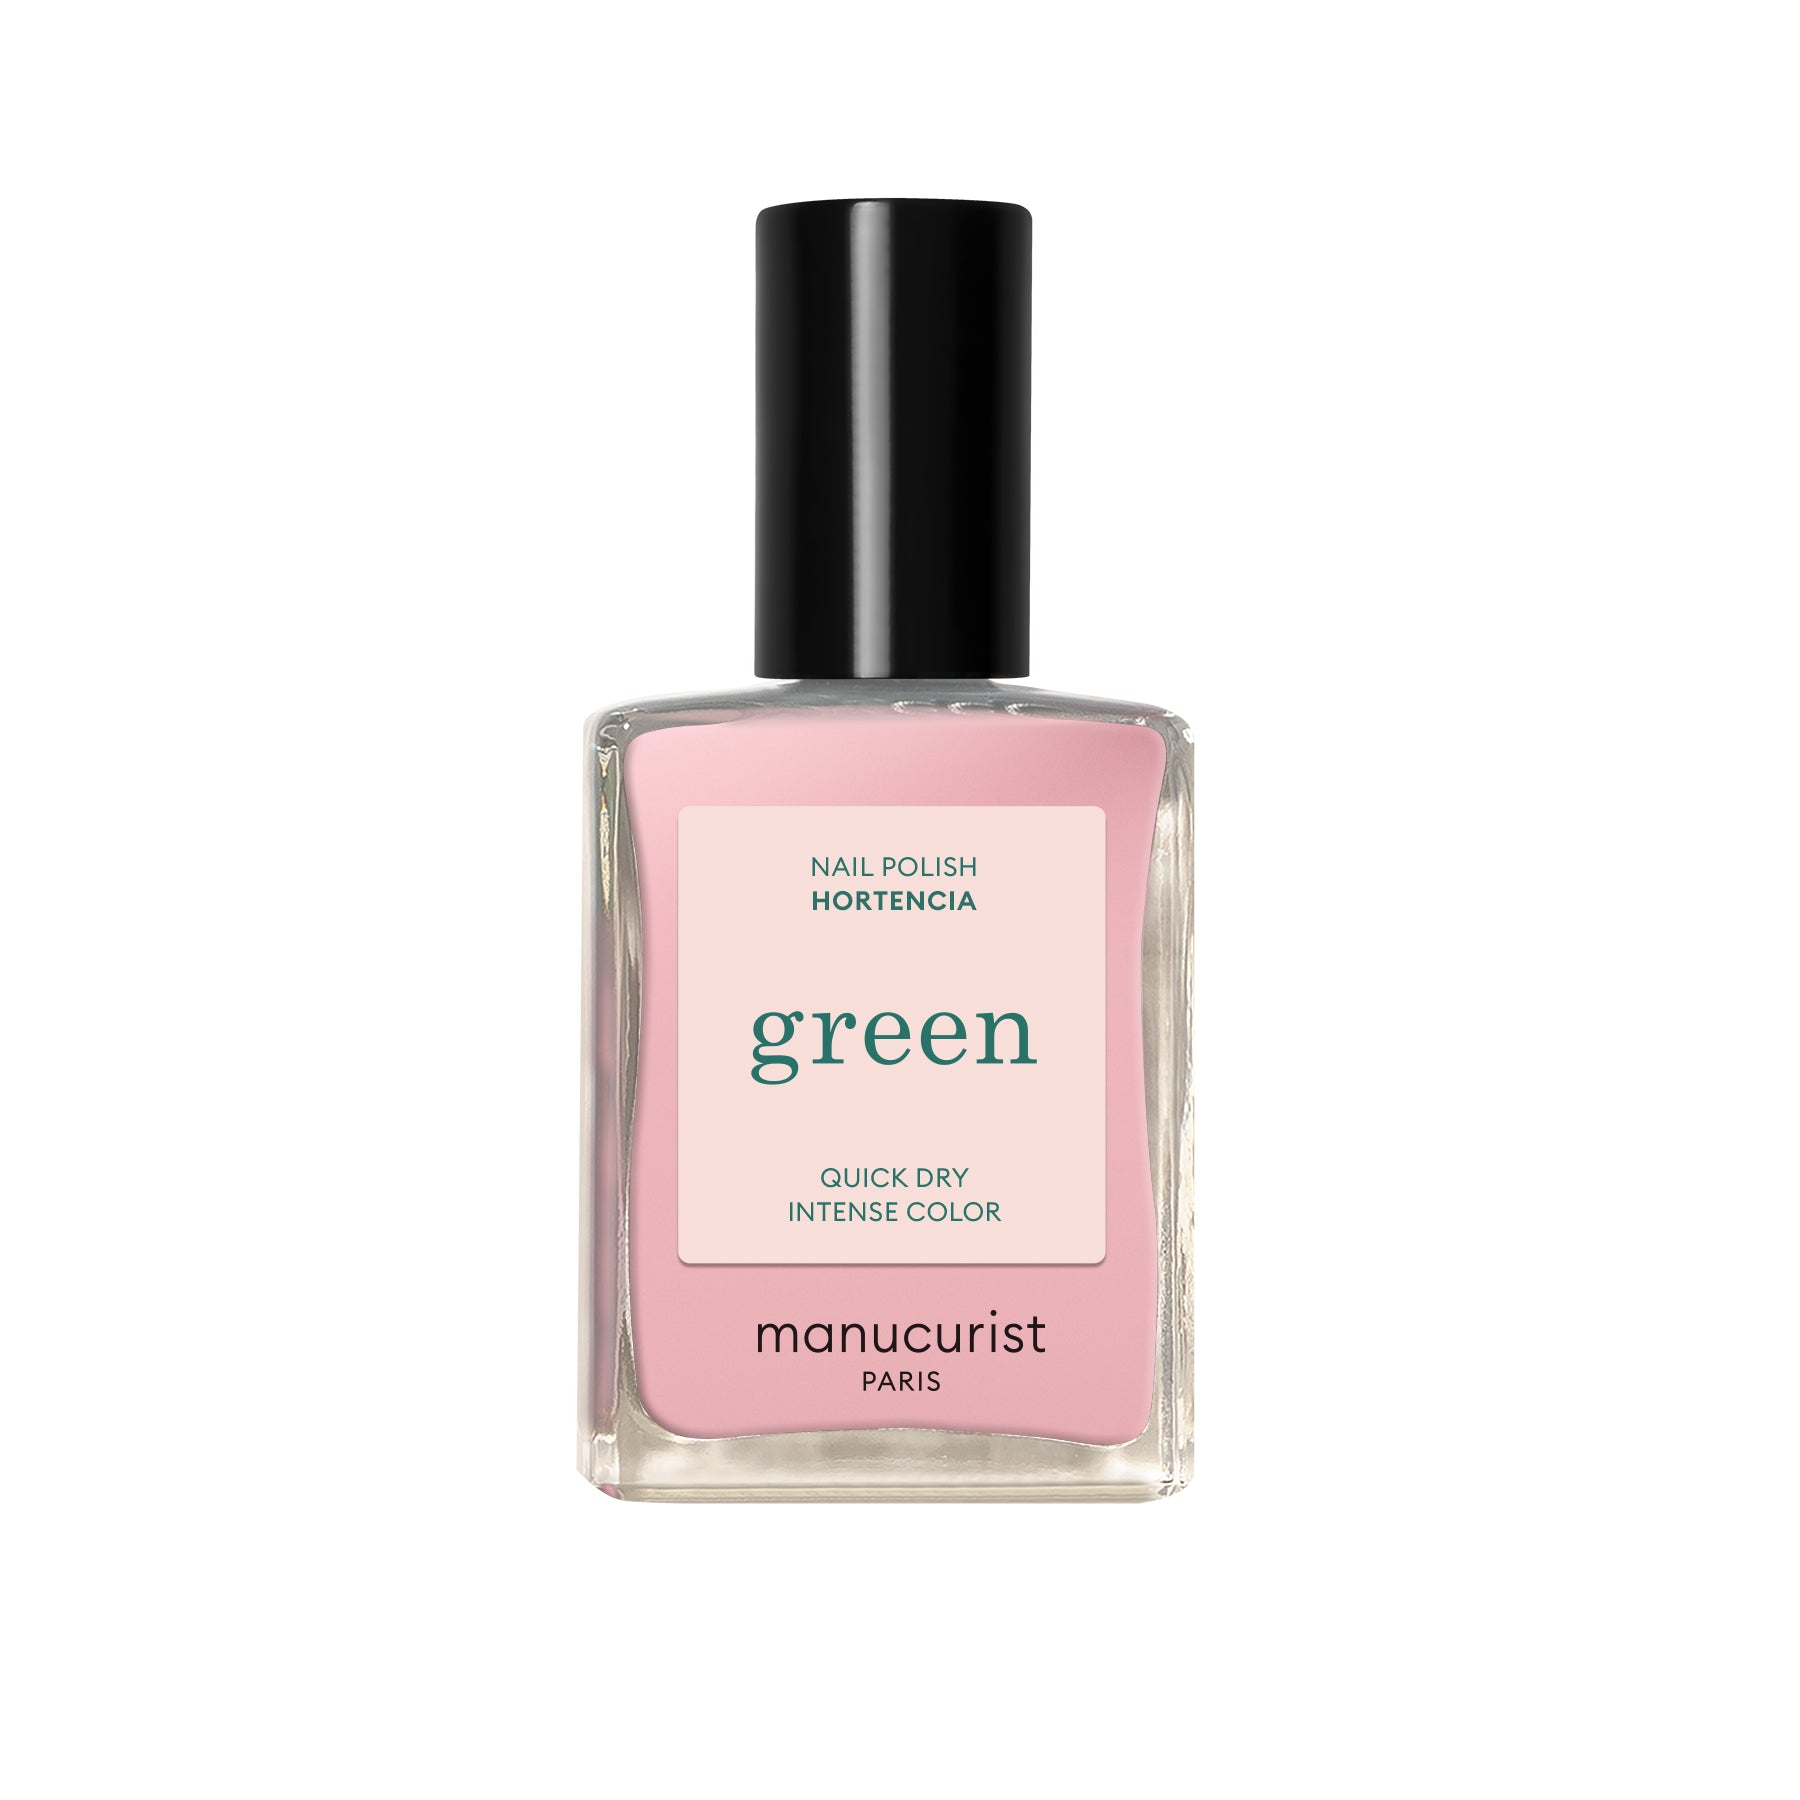 Manucurist Green lak na nehty - Hortencia (15 ml) - světle růžová transparentní barva Manucurist